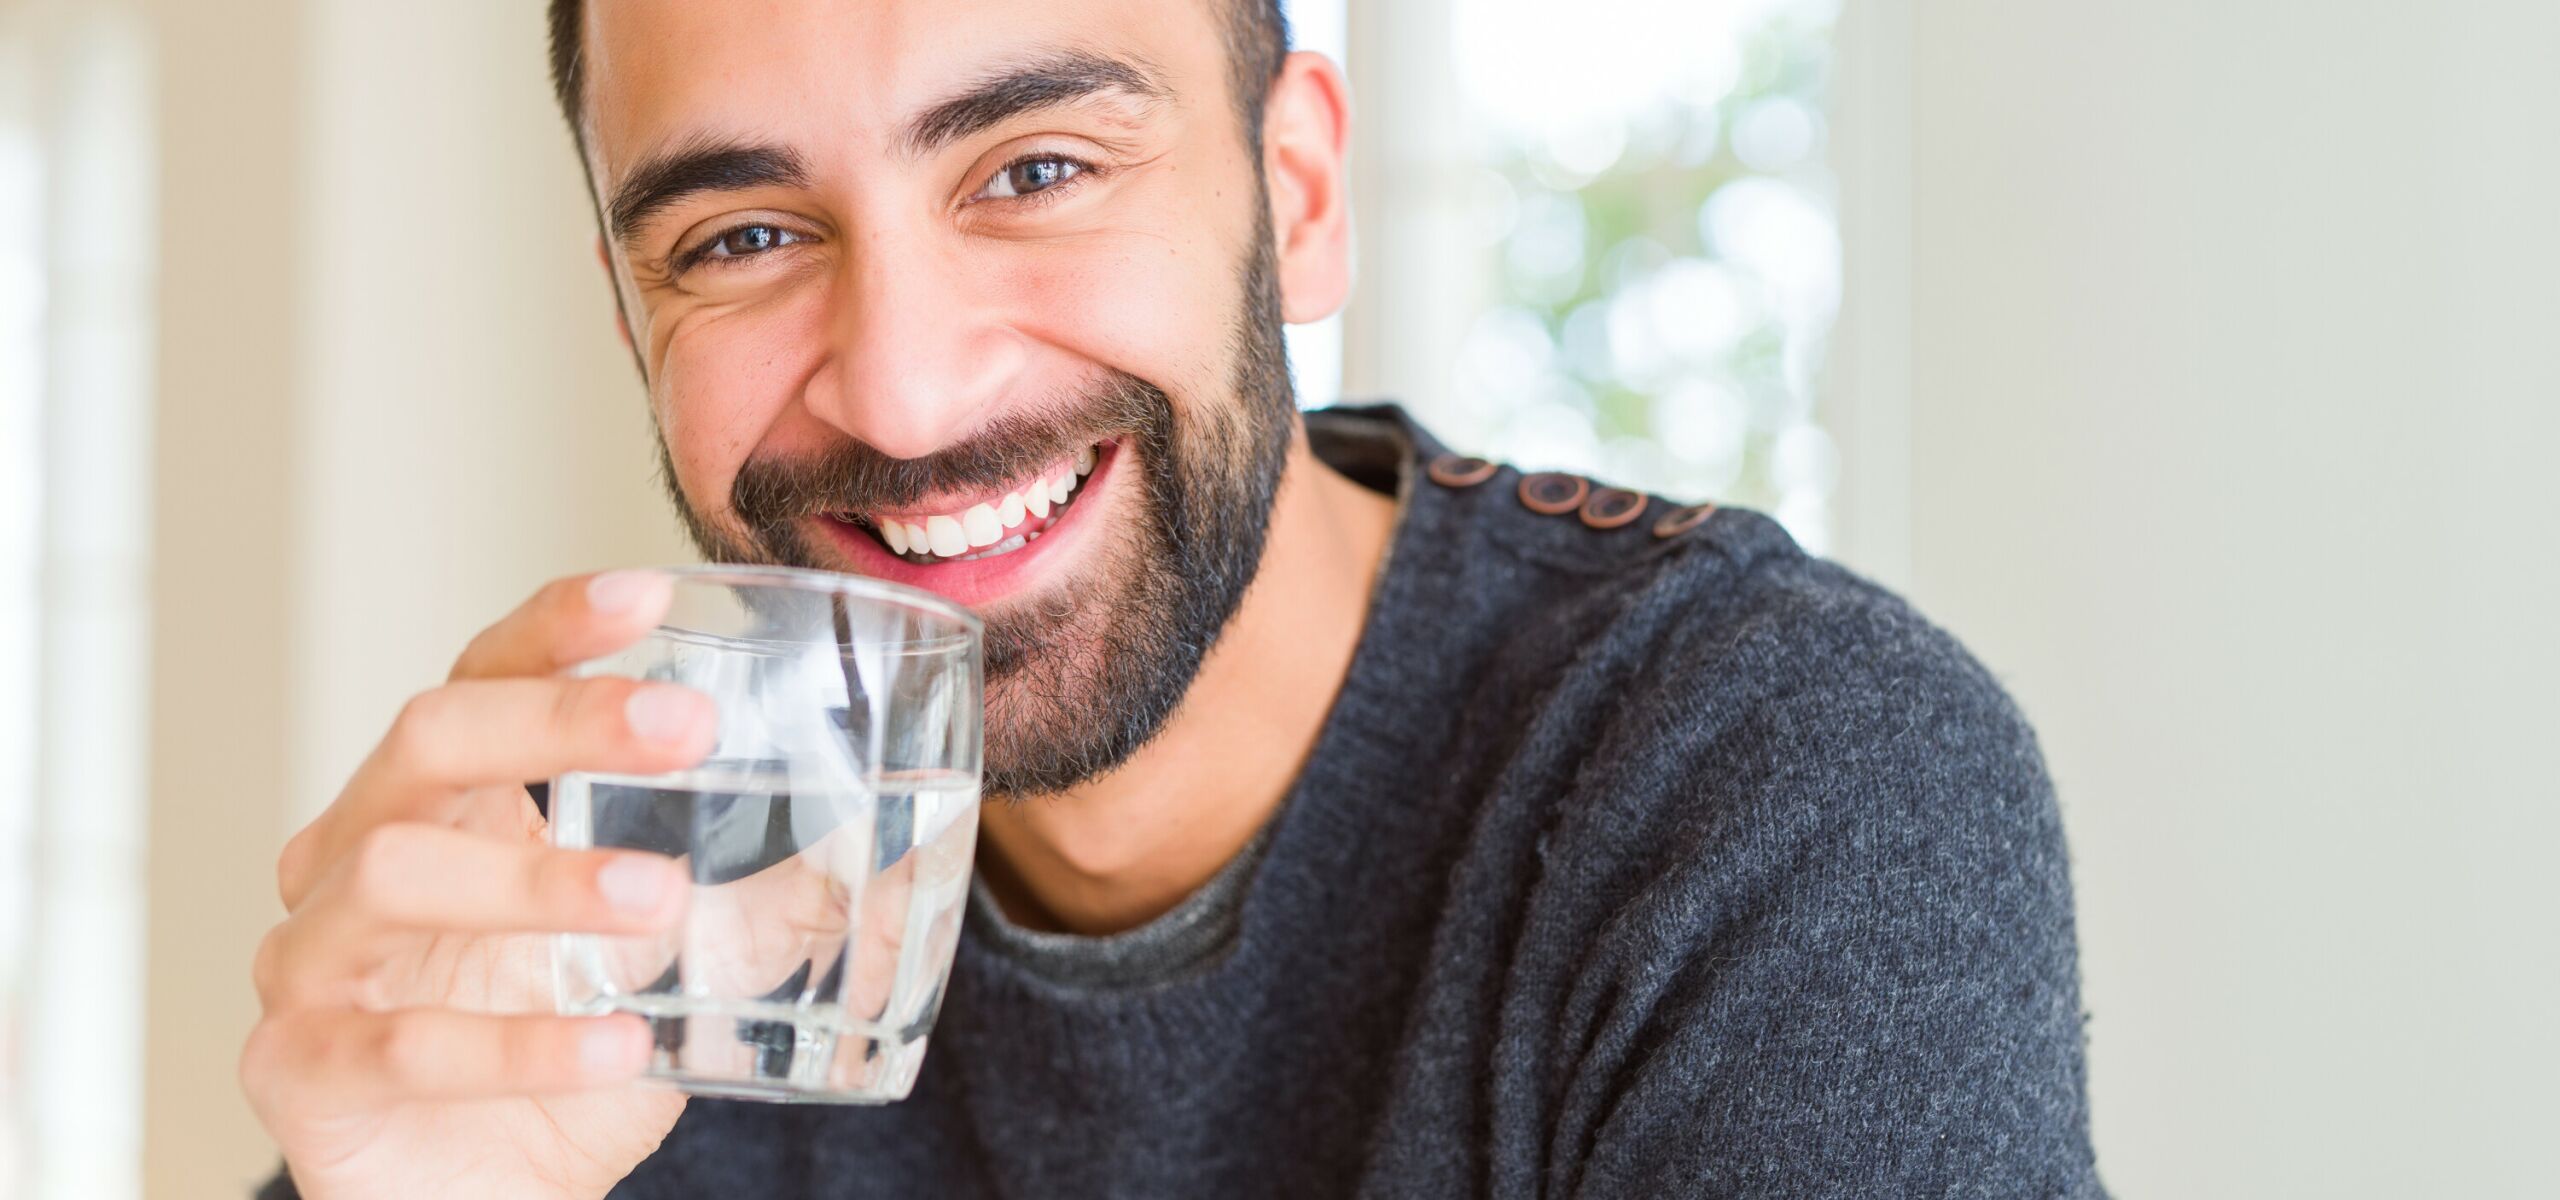 Ein Mann mit leichtem Bart lächelt freundlich und hält ein Glas Trinkwasser in der Hand.